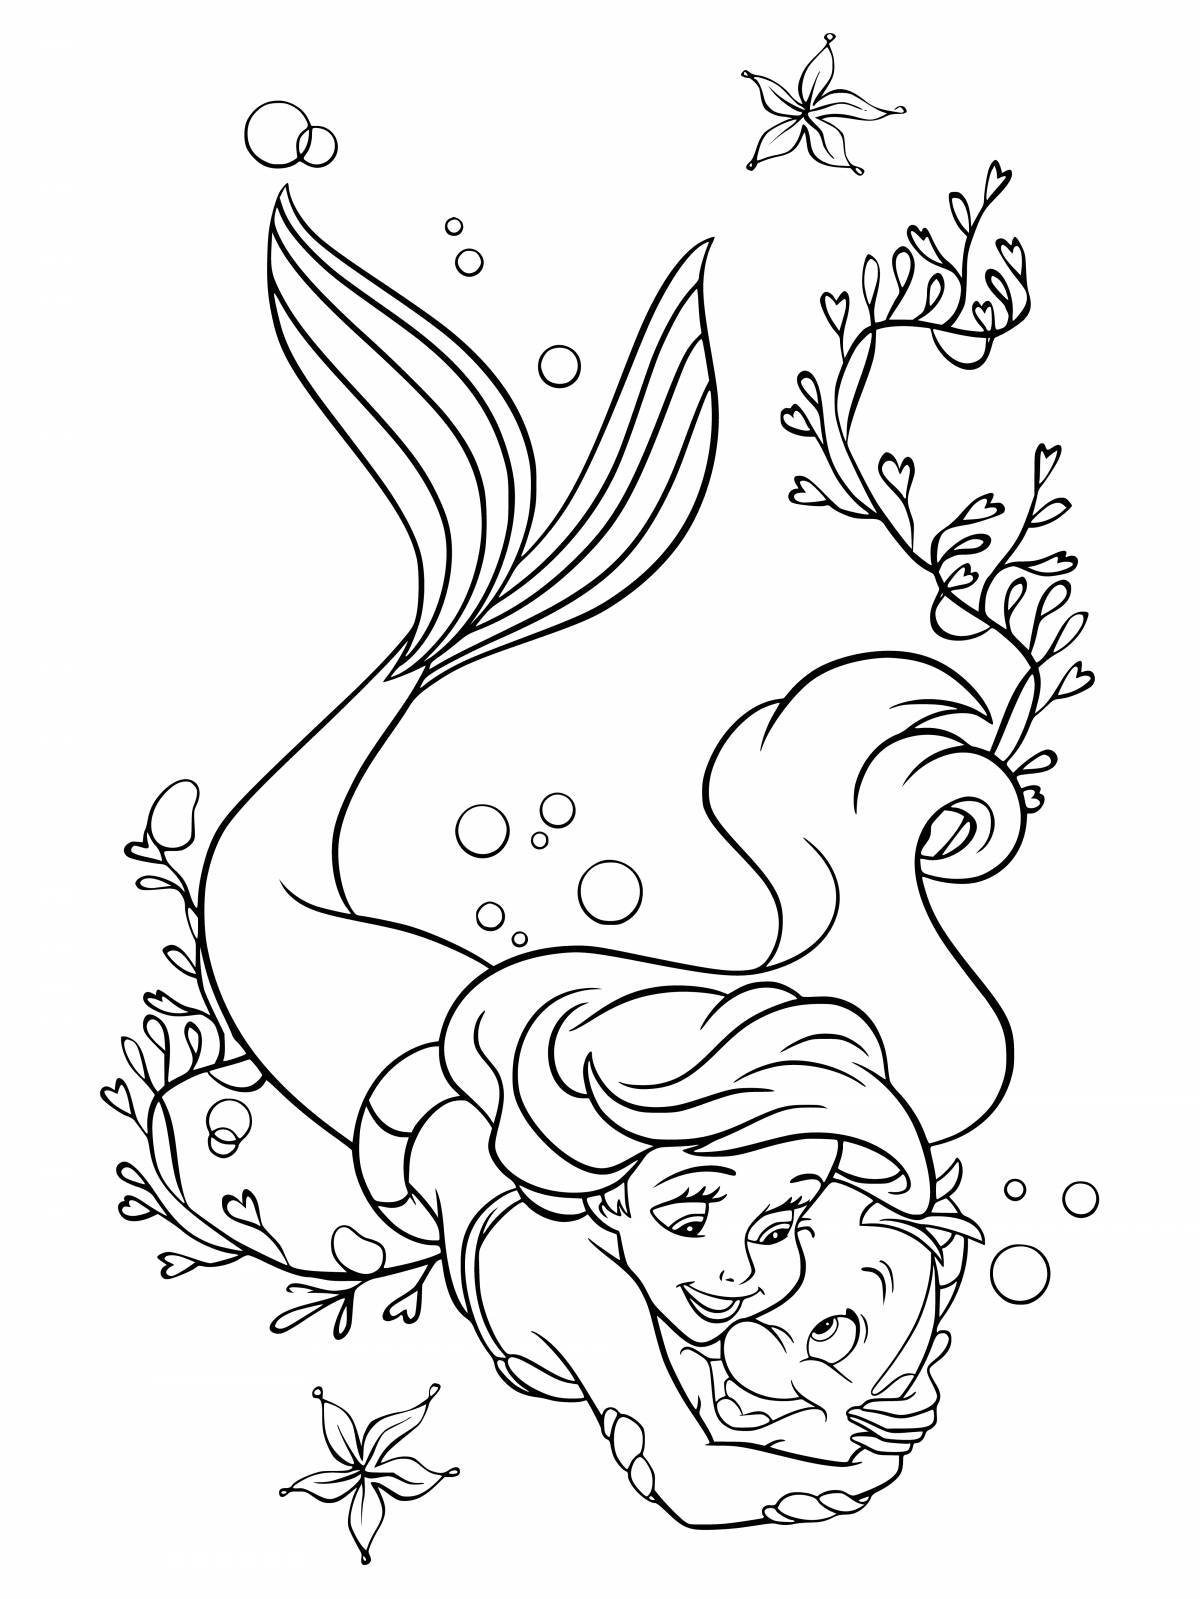 Colorful coloring mermaid ariel